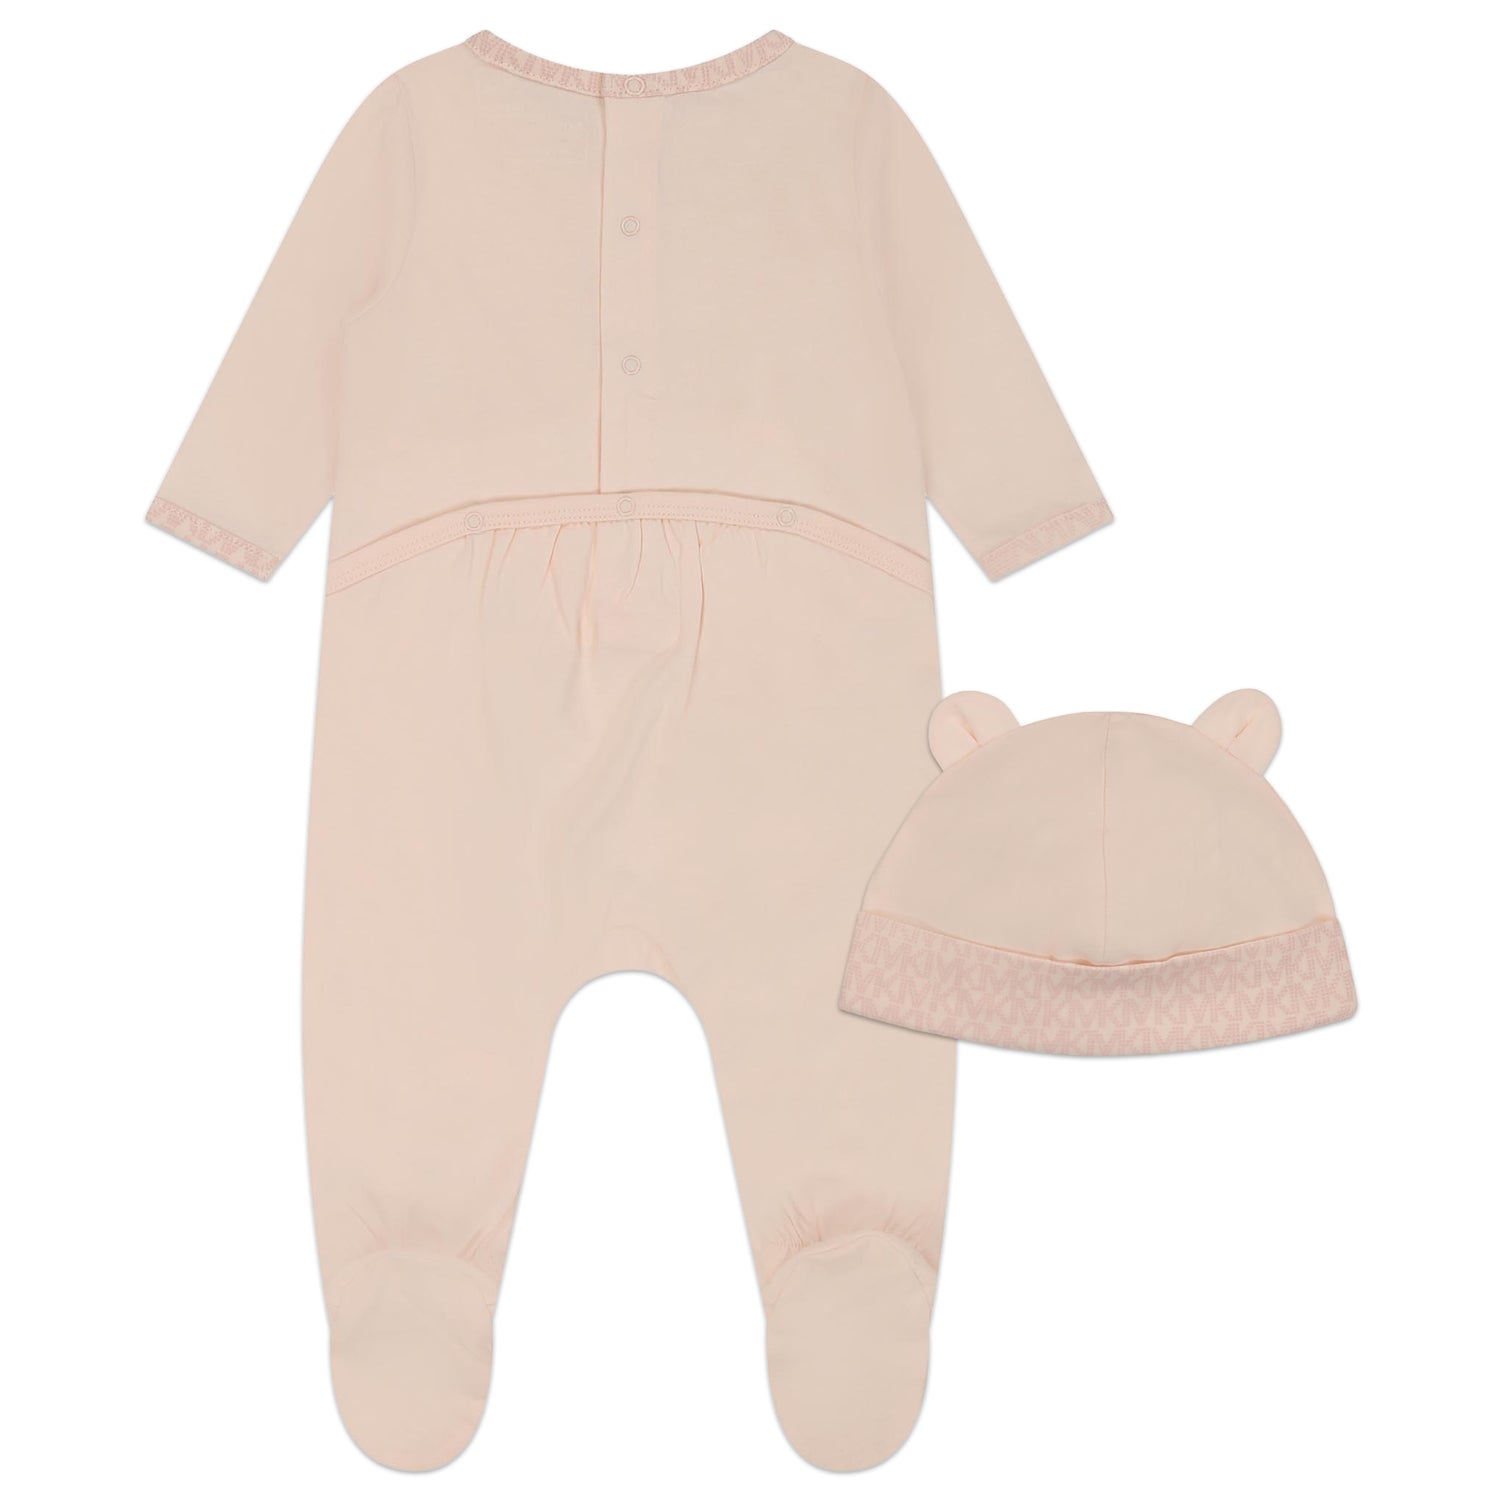 Michael Kors Set Pyjamas + Pull On Hat Style: R98114